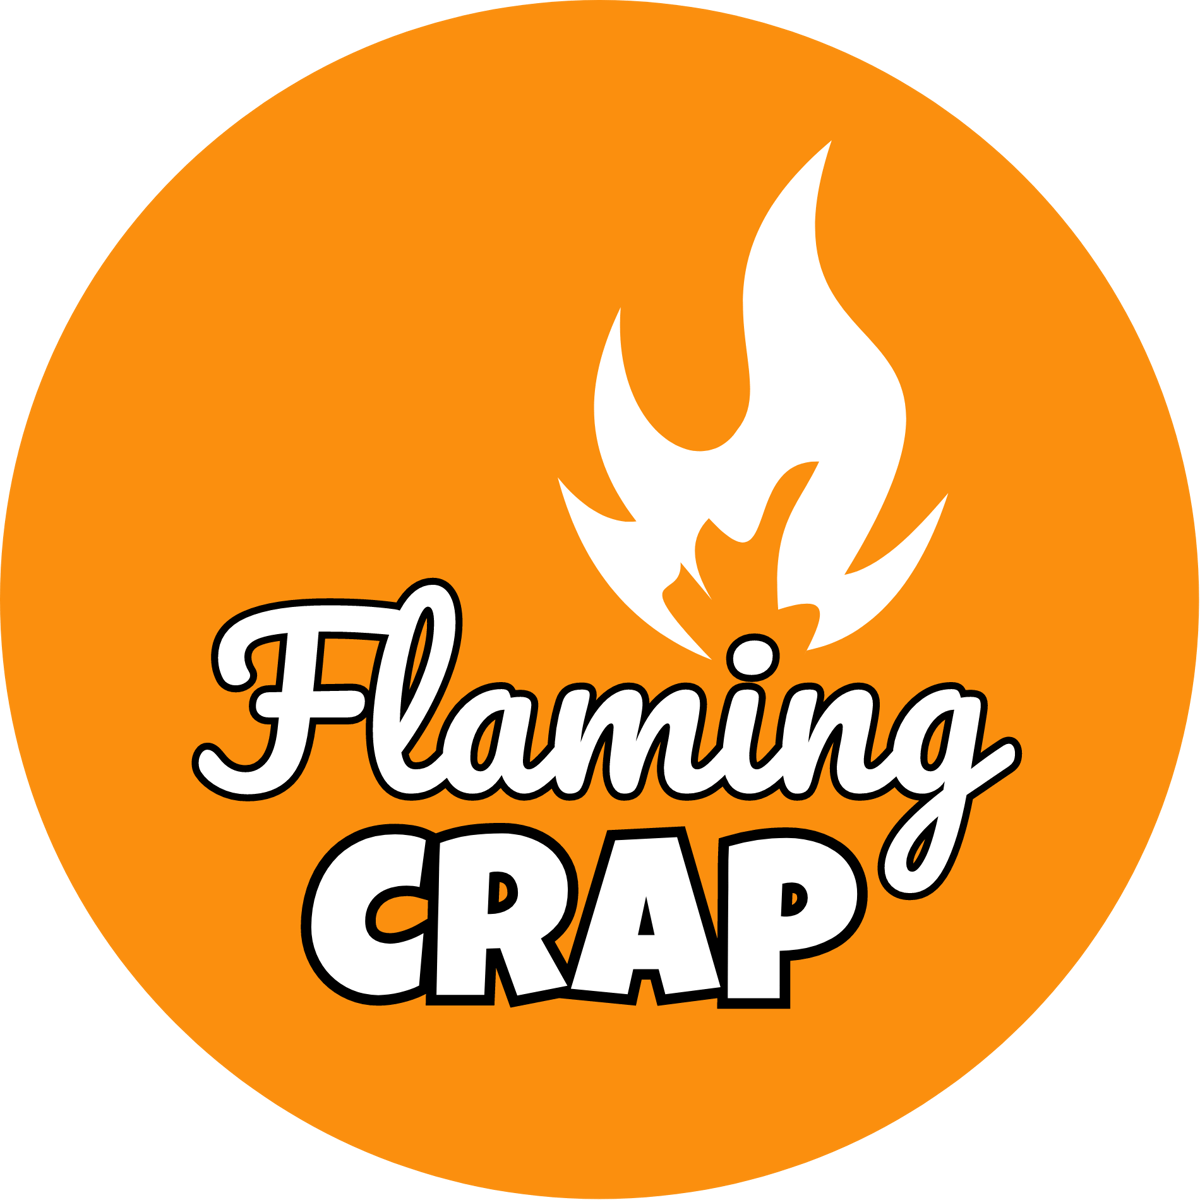 Flaming Crap